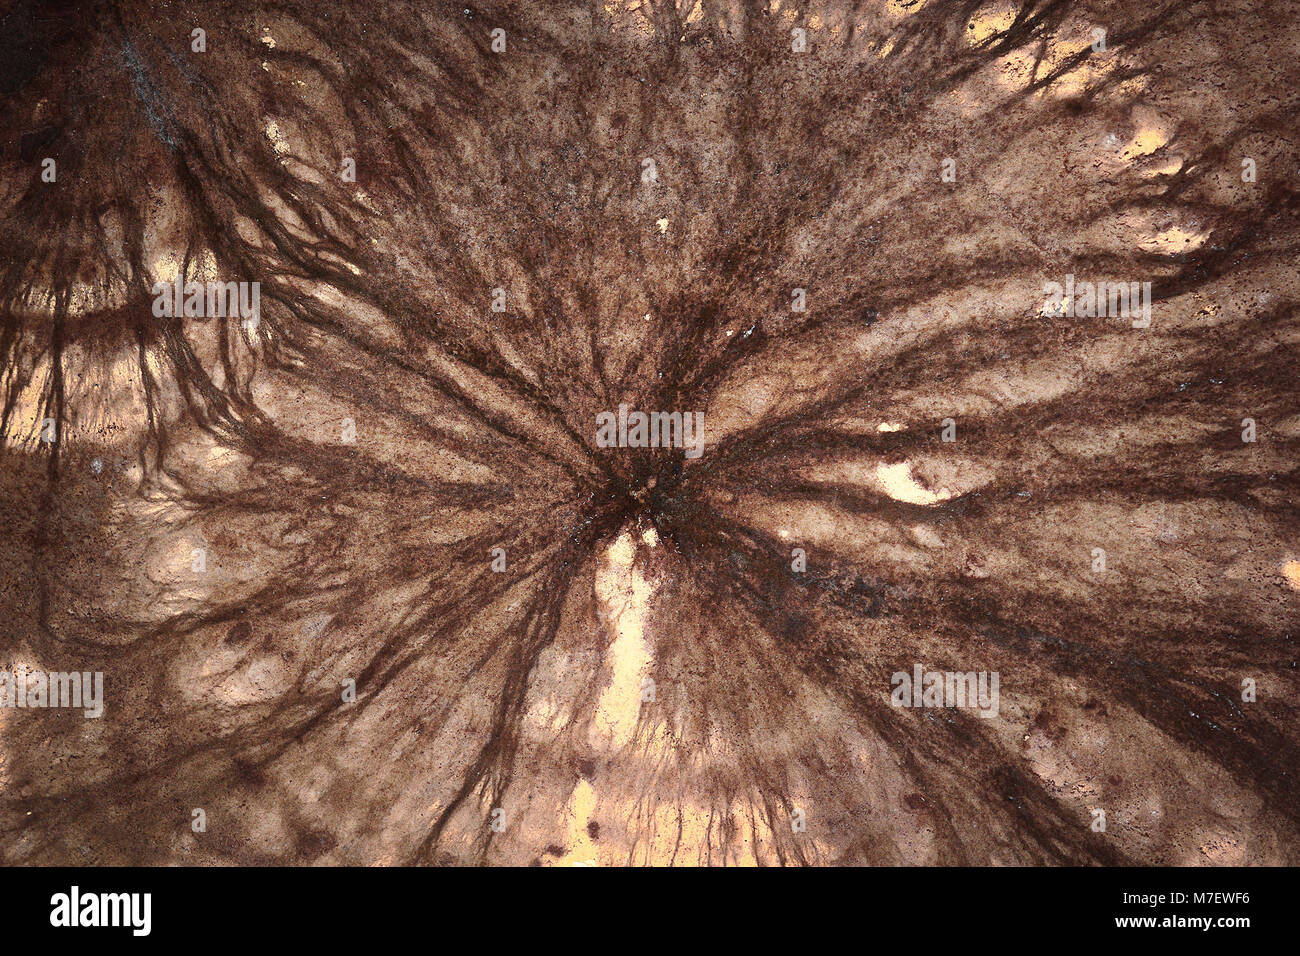 Dettaglio della cantina di micelio di fungo ( Coniophora puteana ) Foto Stock